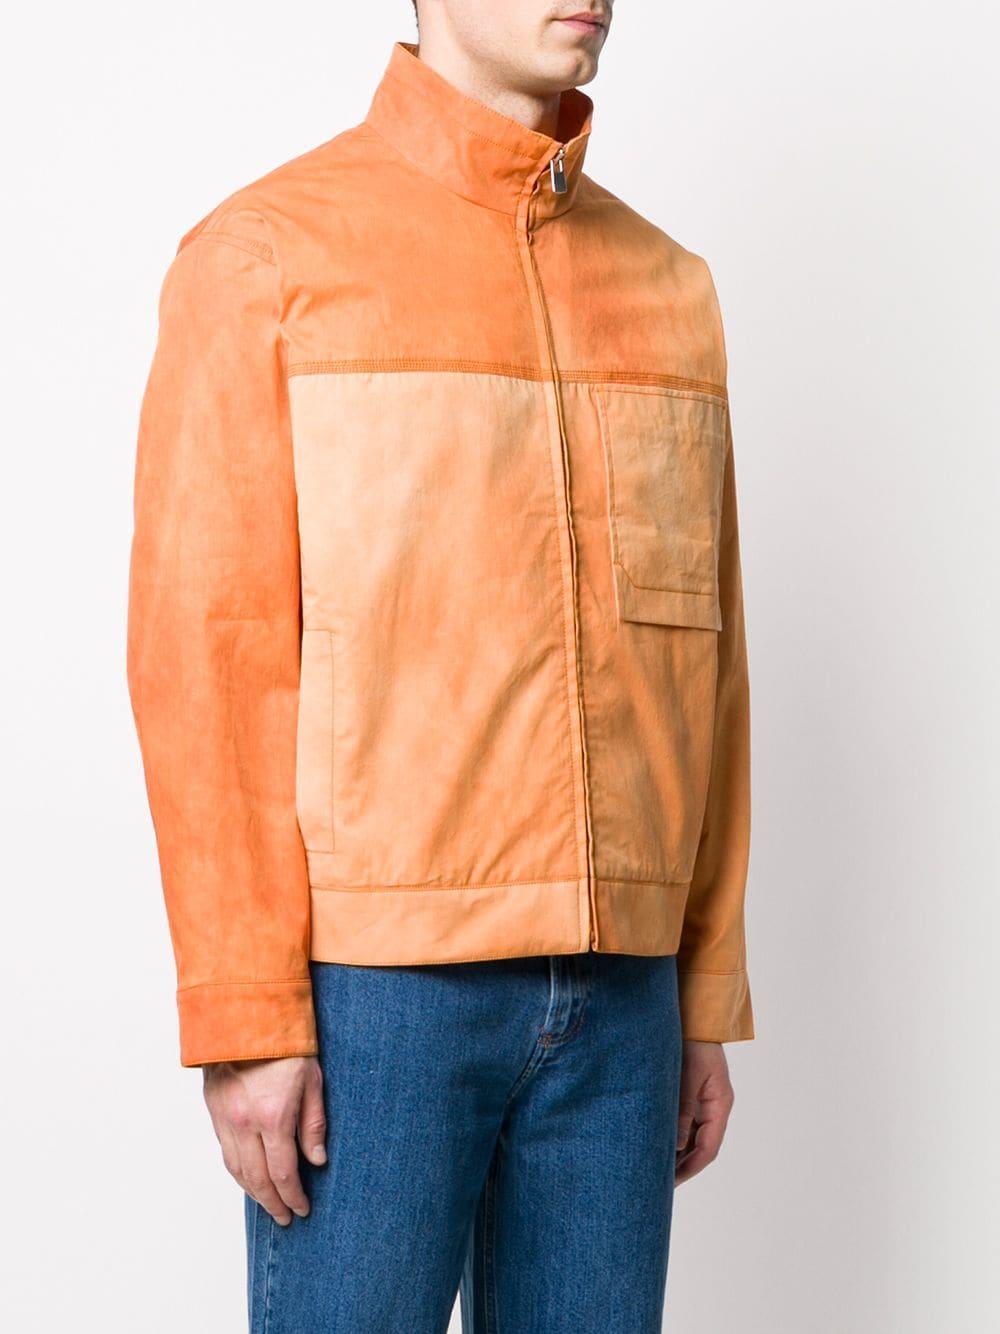 Jacquemus Cotton Le Blouson Valensole Jacket in Orange for Men - Lyst